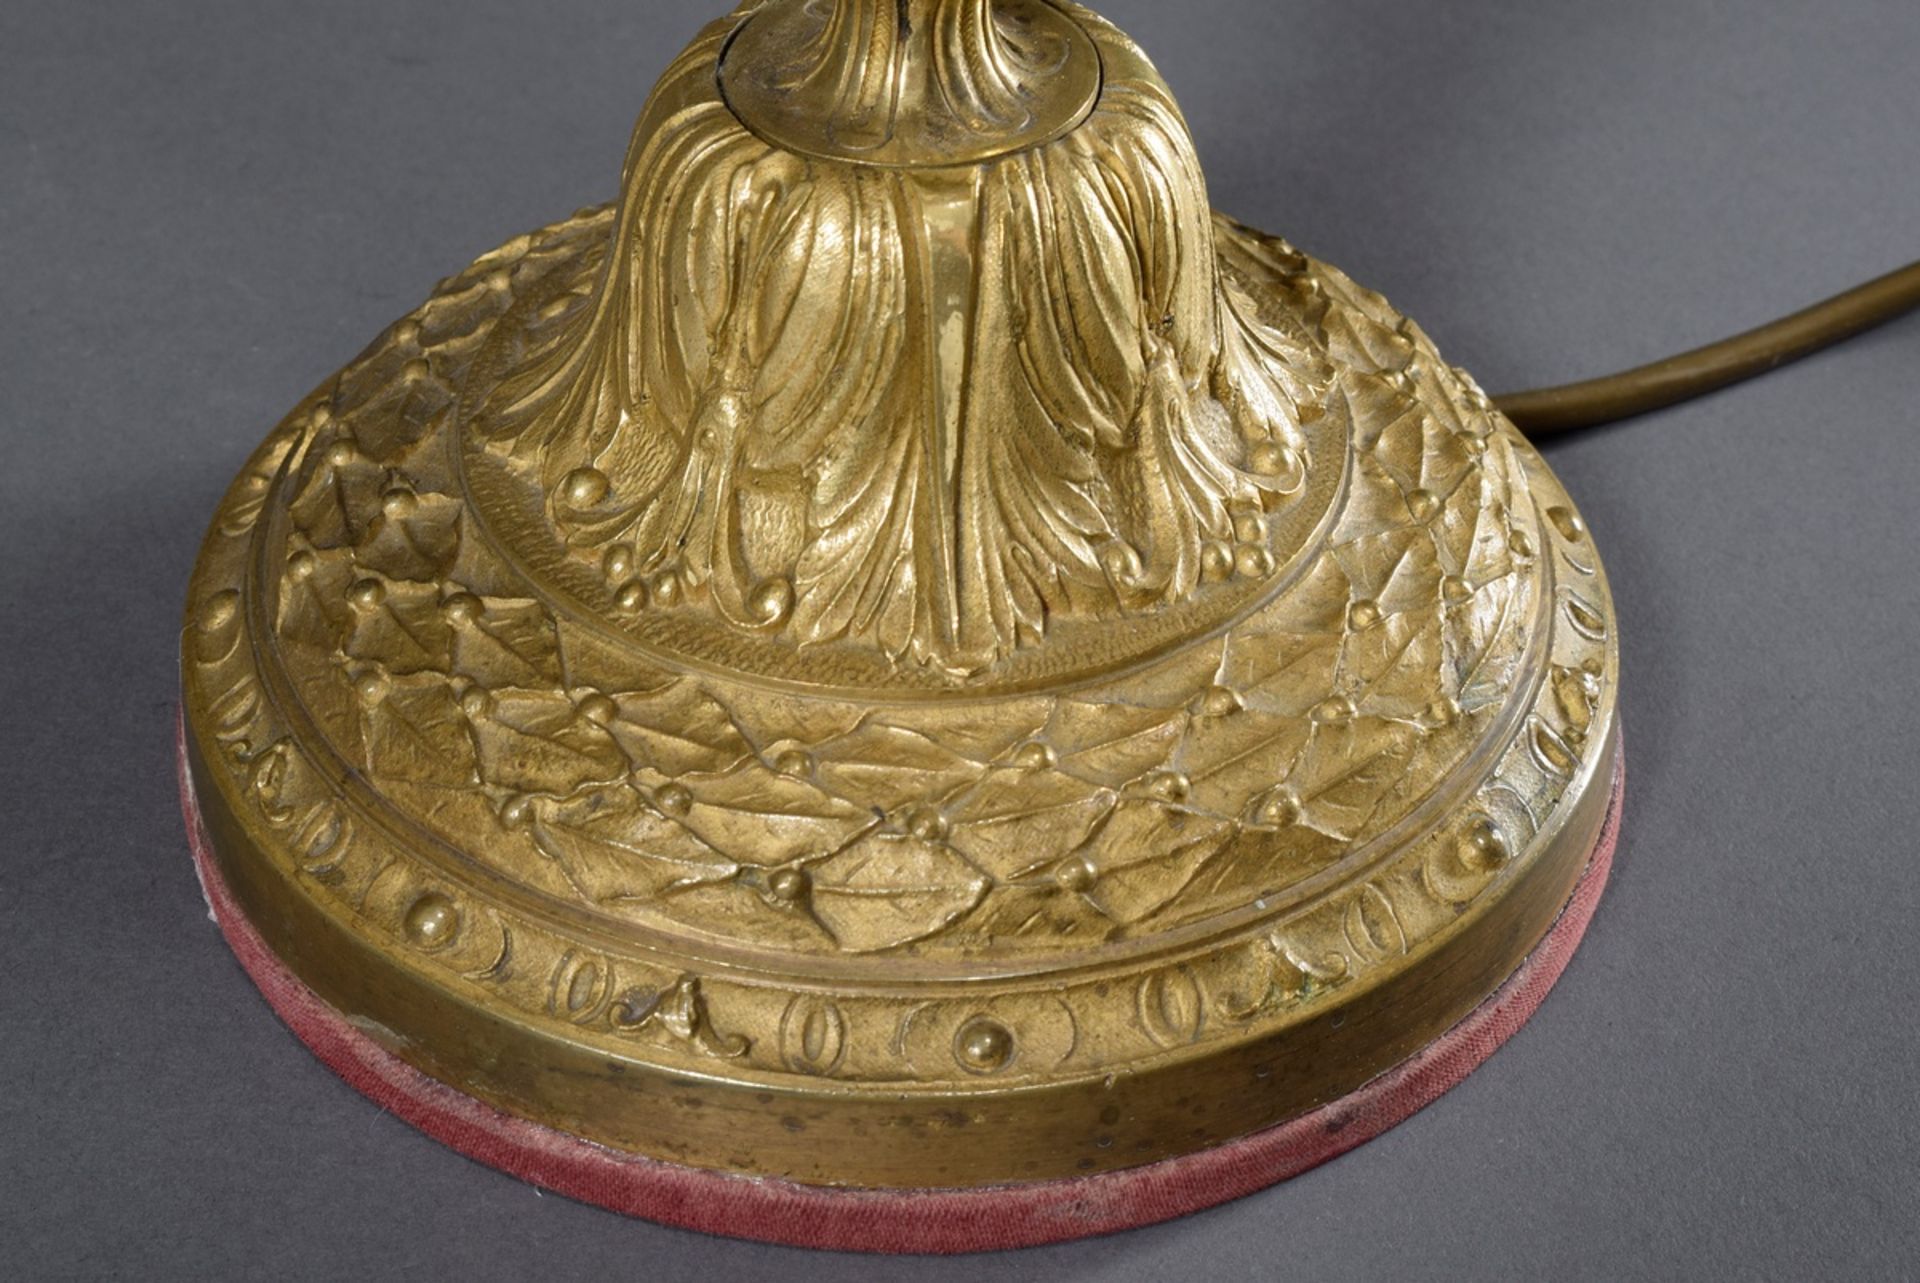 Französischer Bronze Leuchter im Louis XVI Stil mit plastischem Girlandendekor, als Lampe montiert, - Bild 4 aus 6